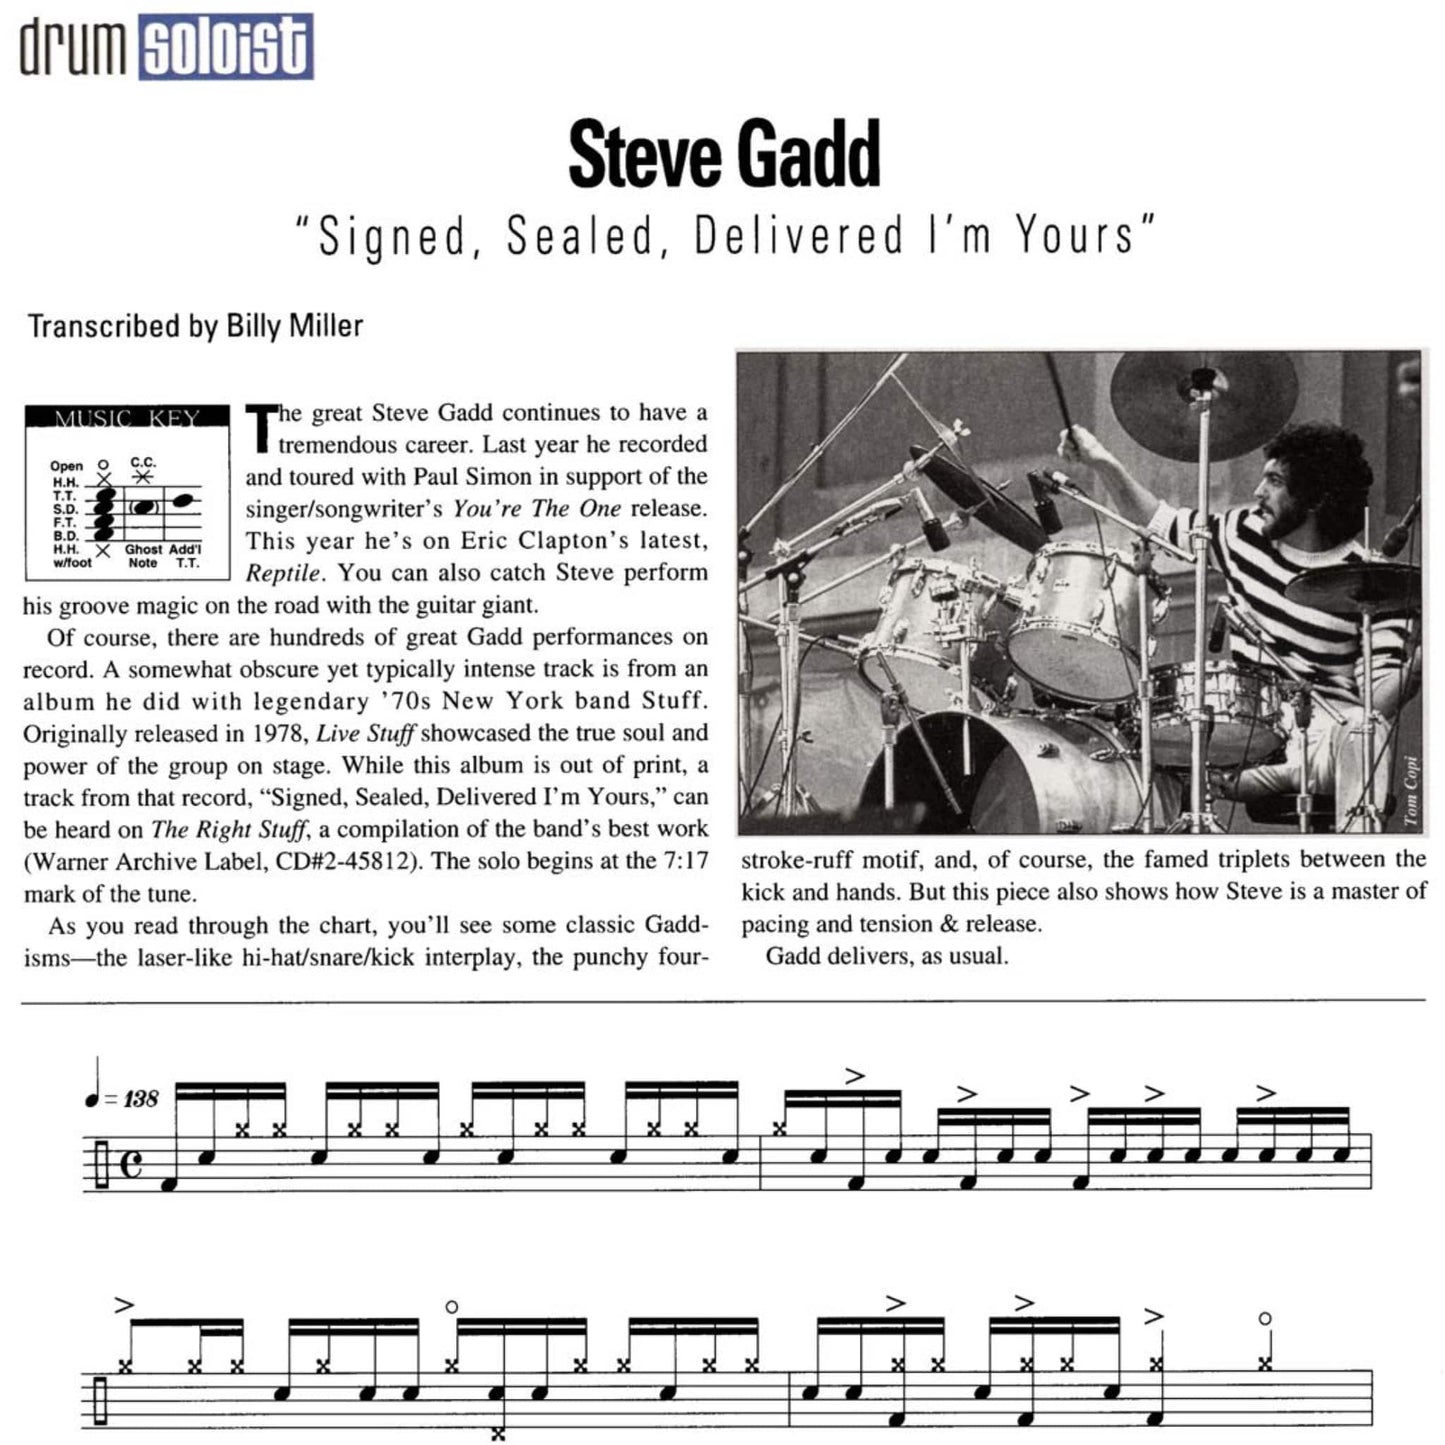 Steve Gadd's "Signed, Sealed, Delivered, I'm Yours"